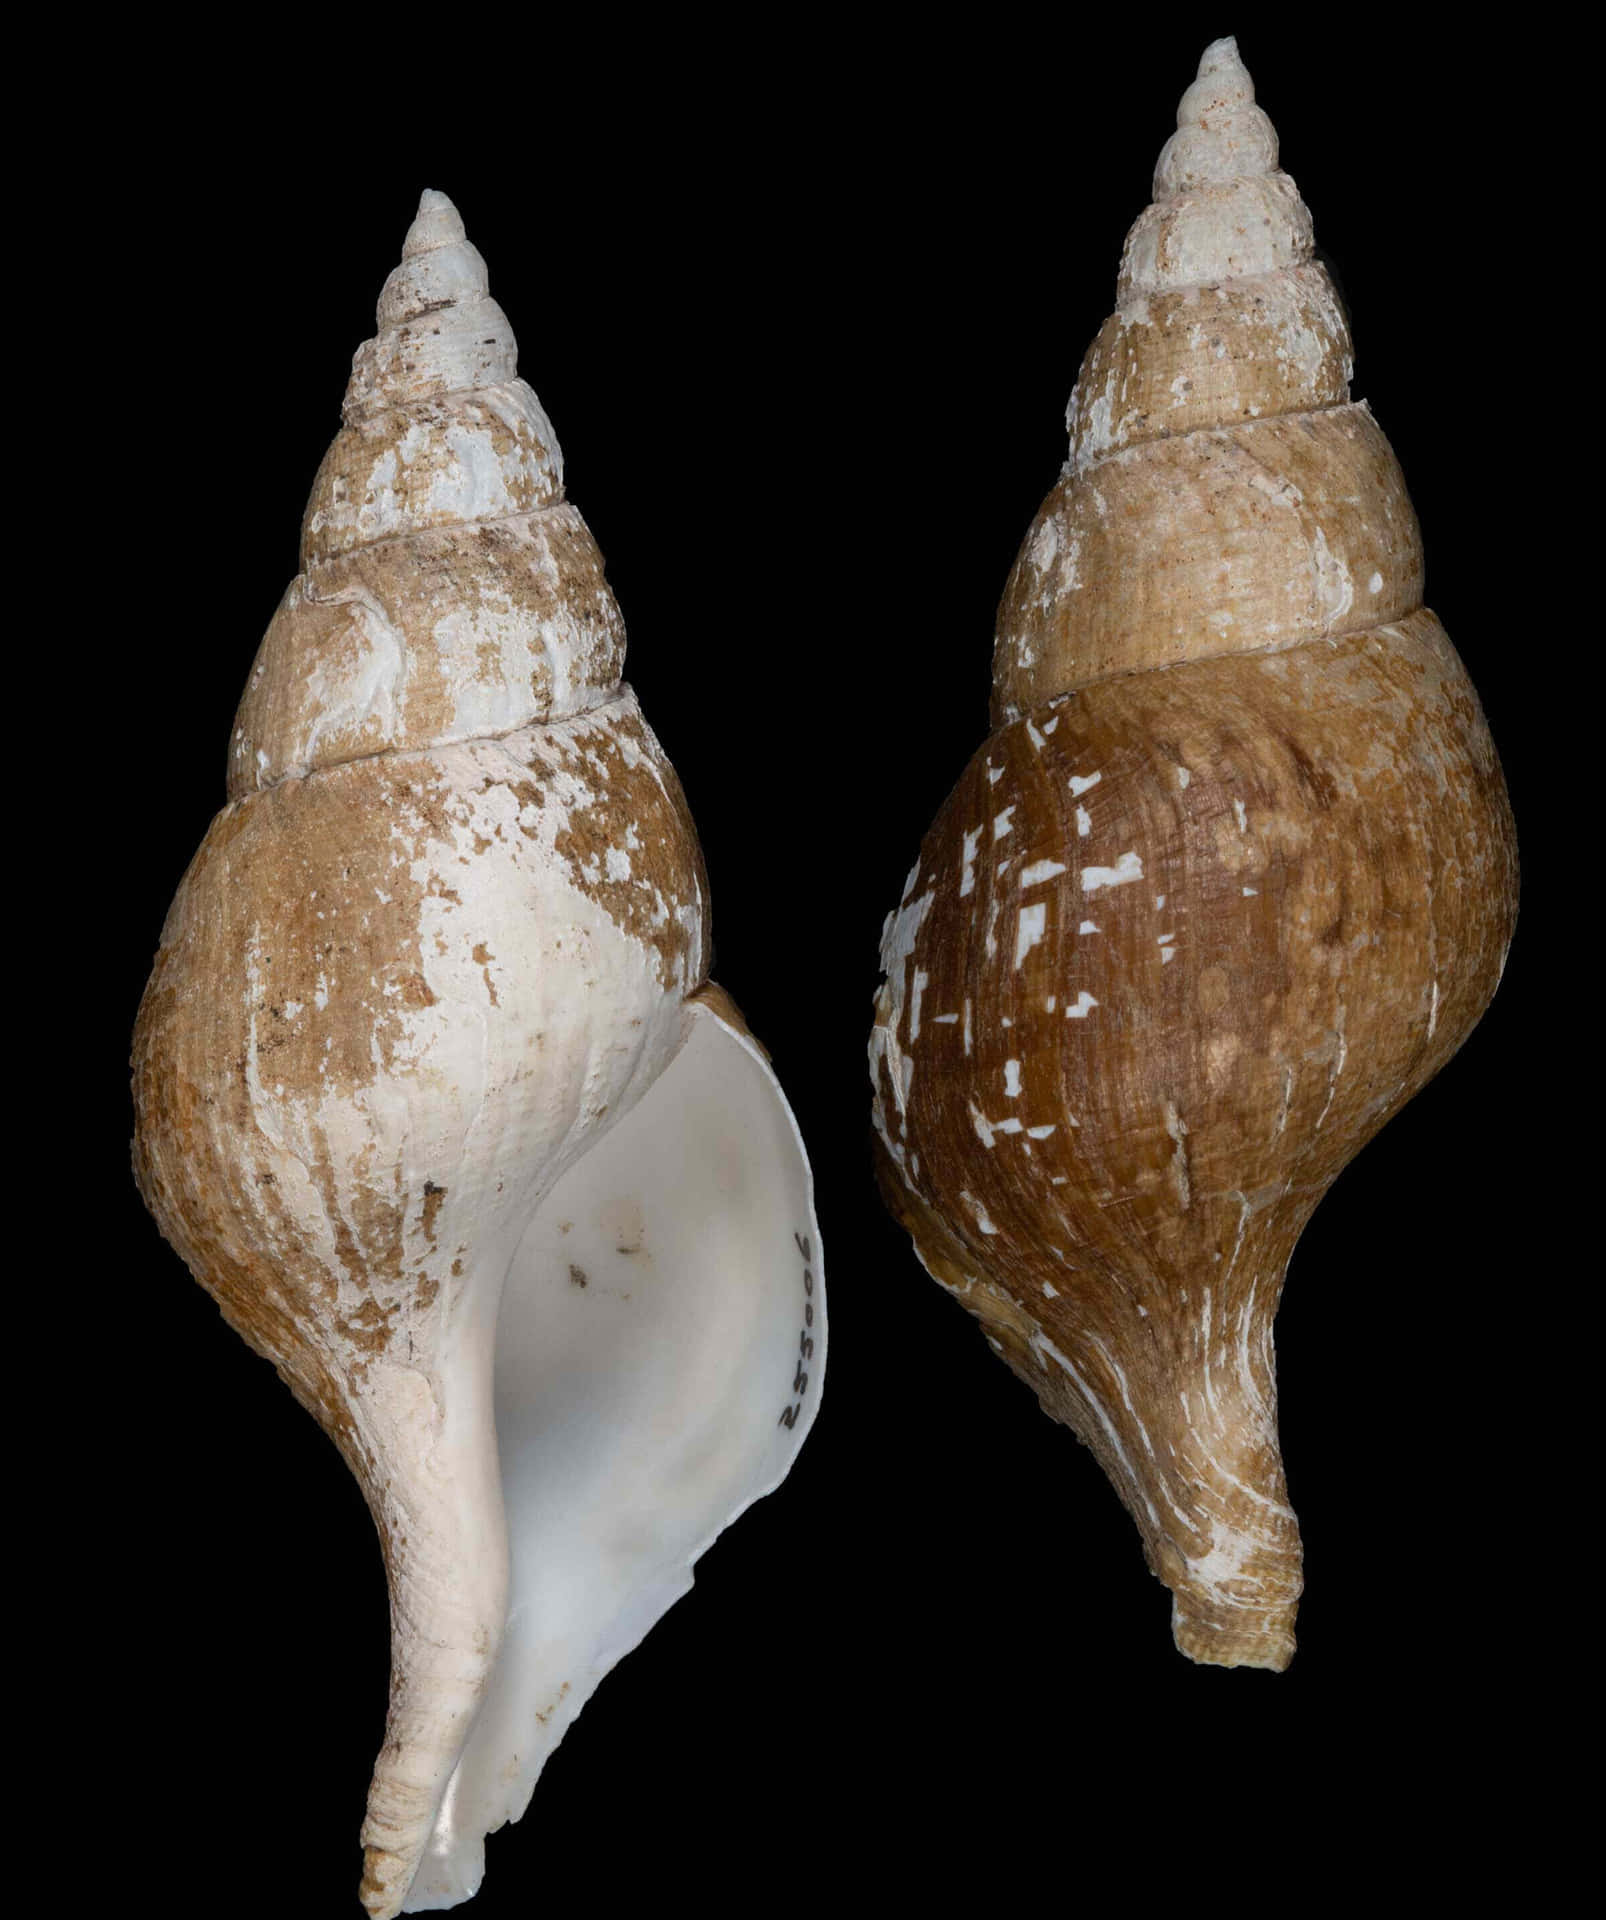 Buccinidae Whelk Shells Two Views Wallpaper